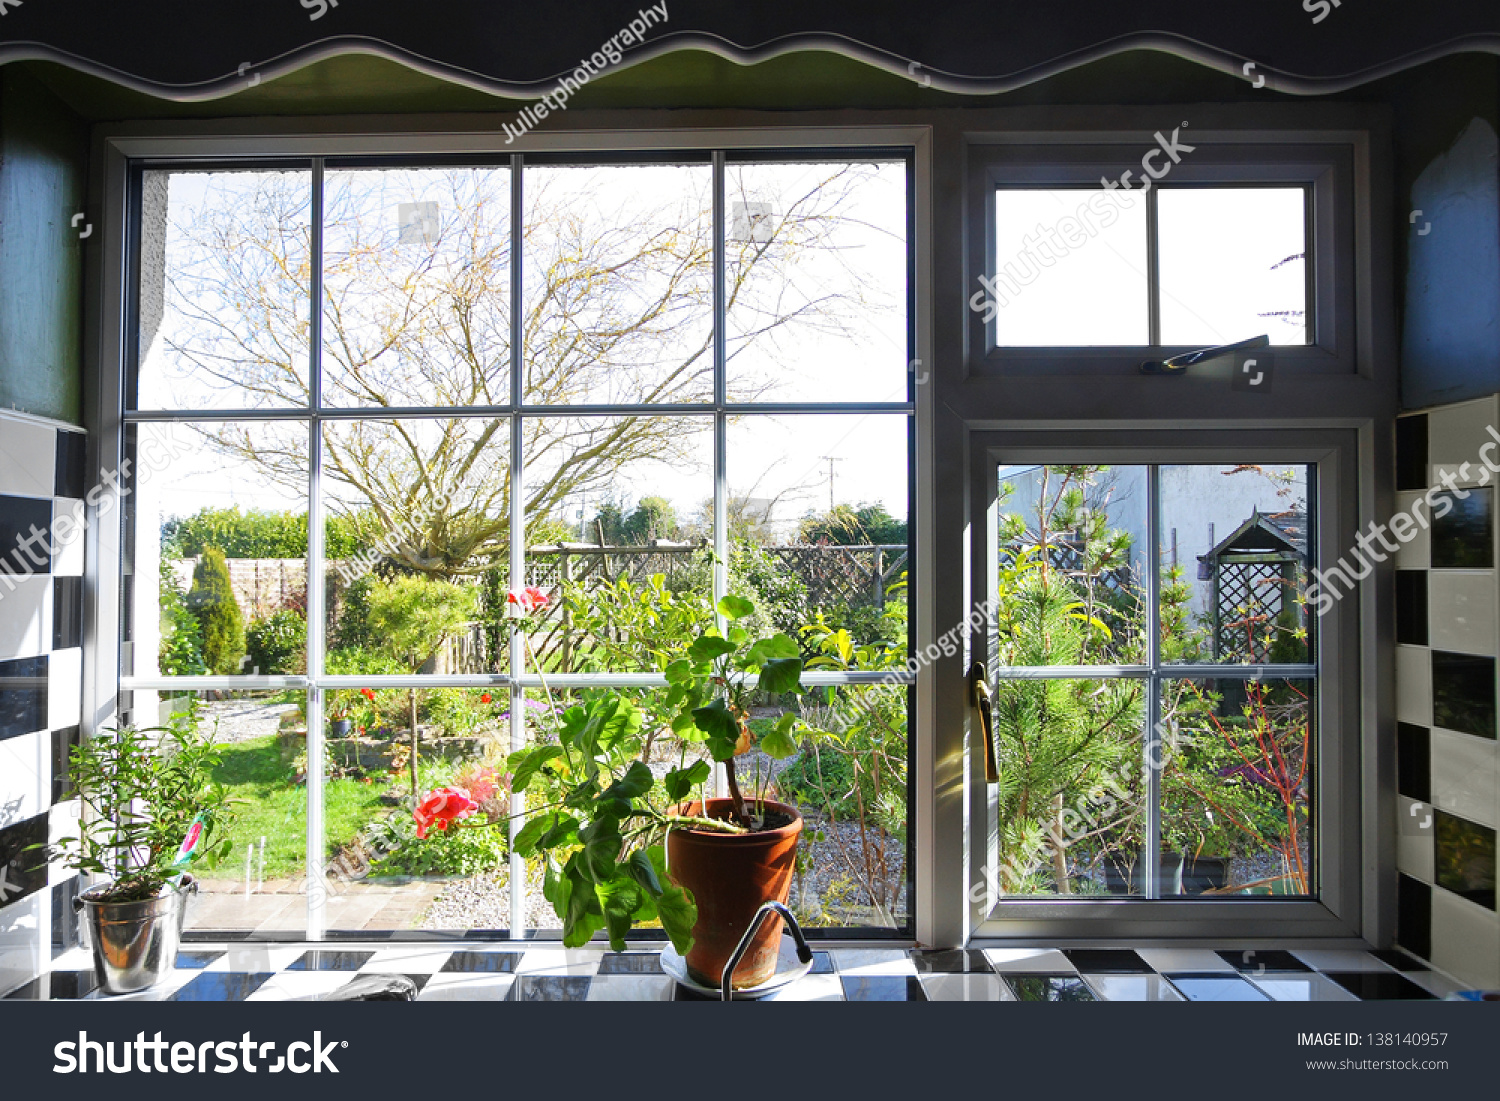 kitchen garden window images clipart